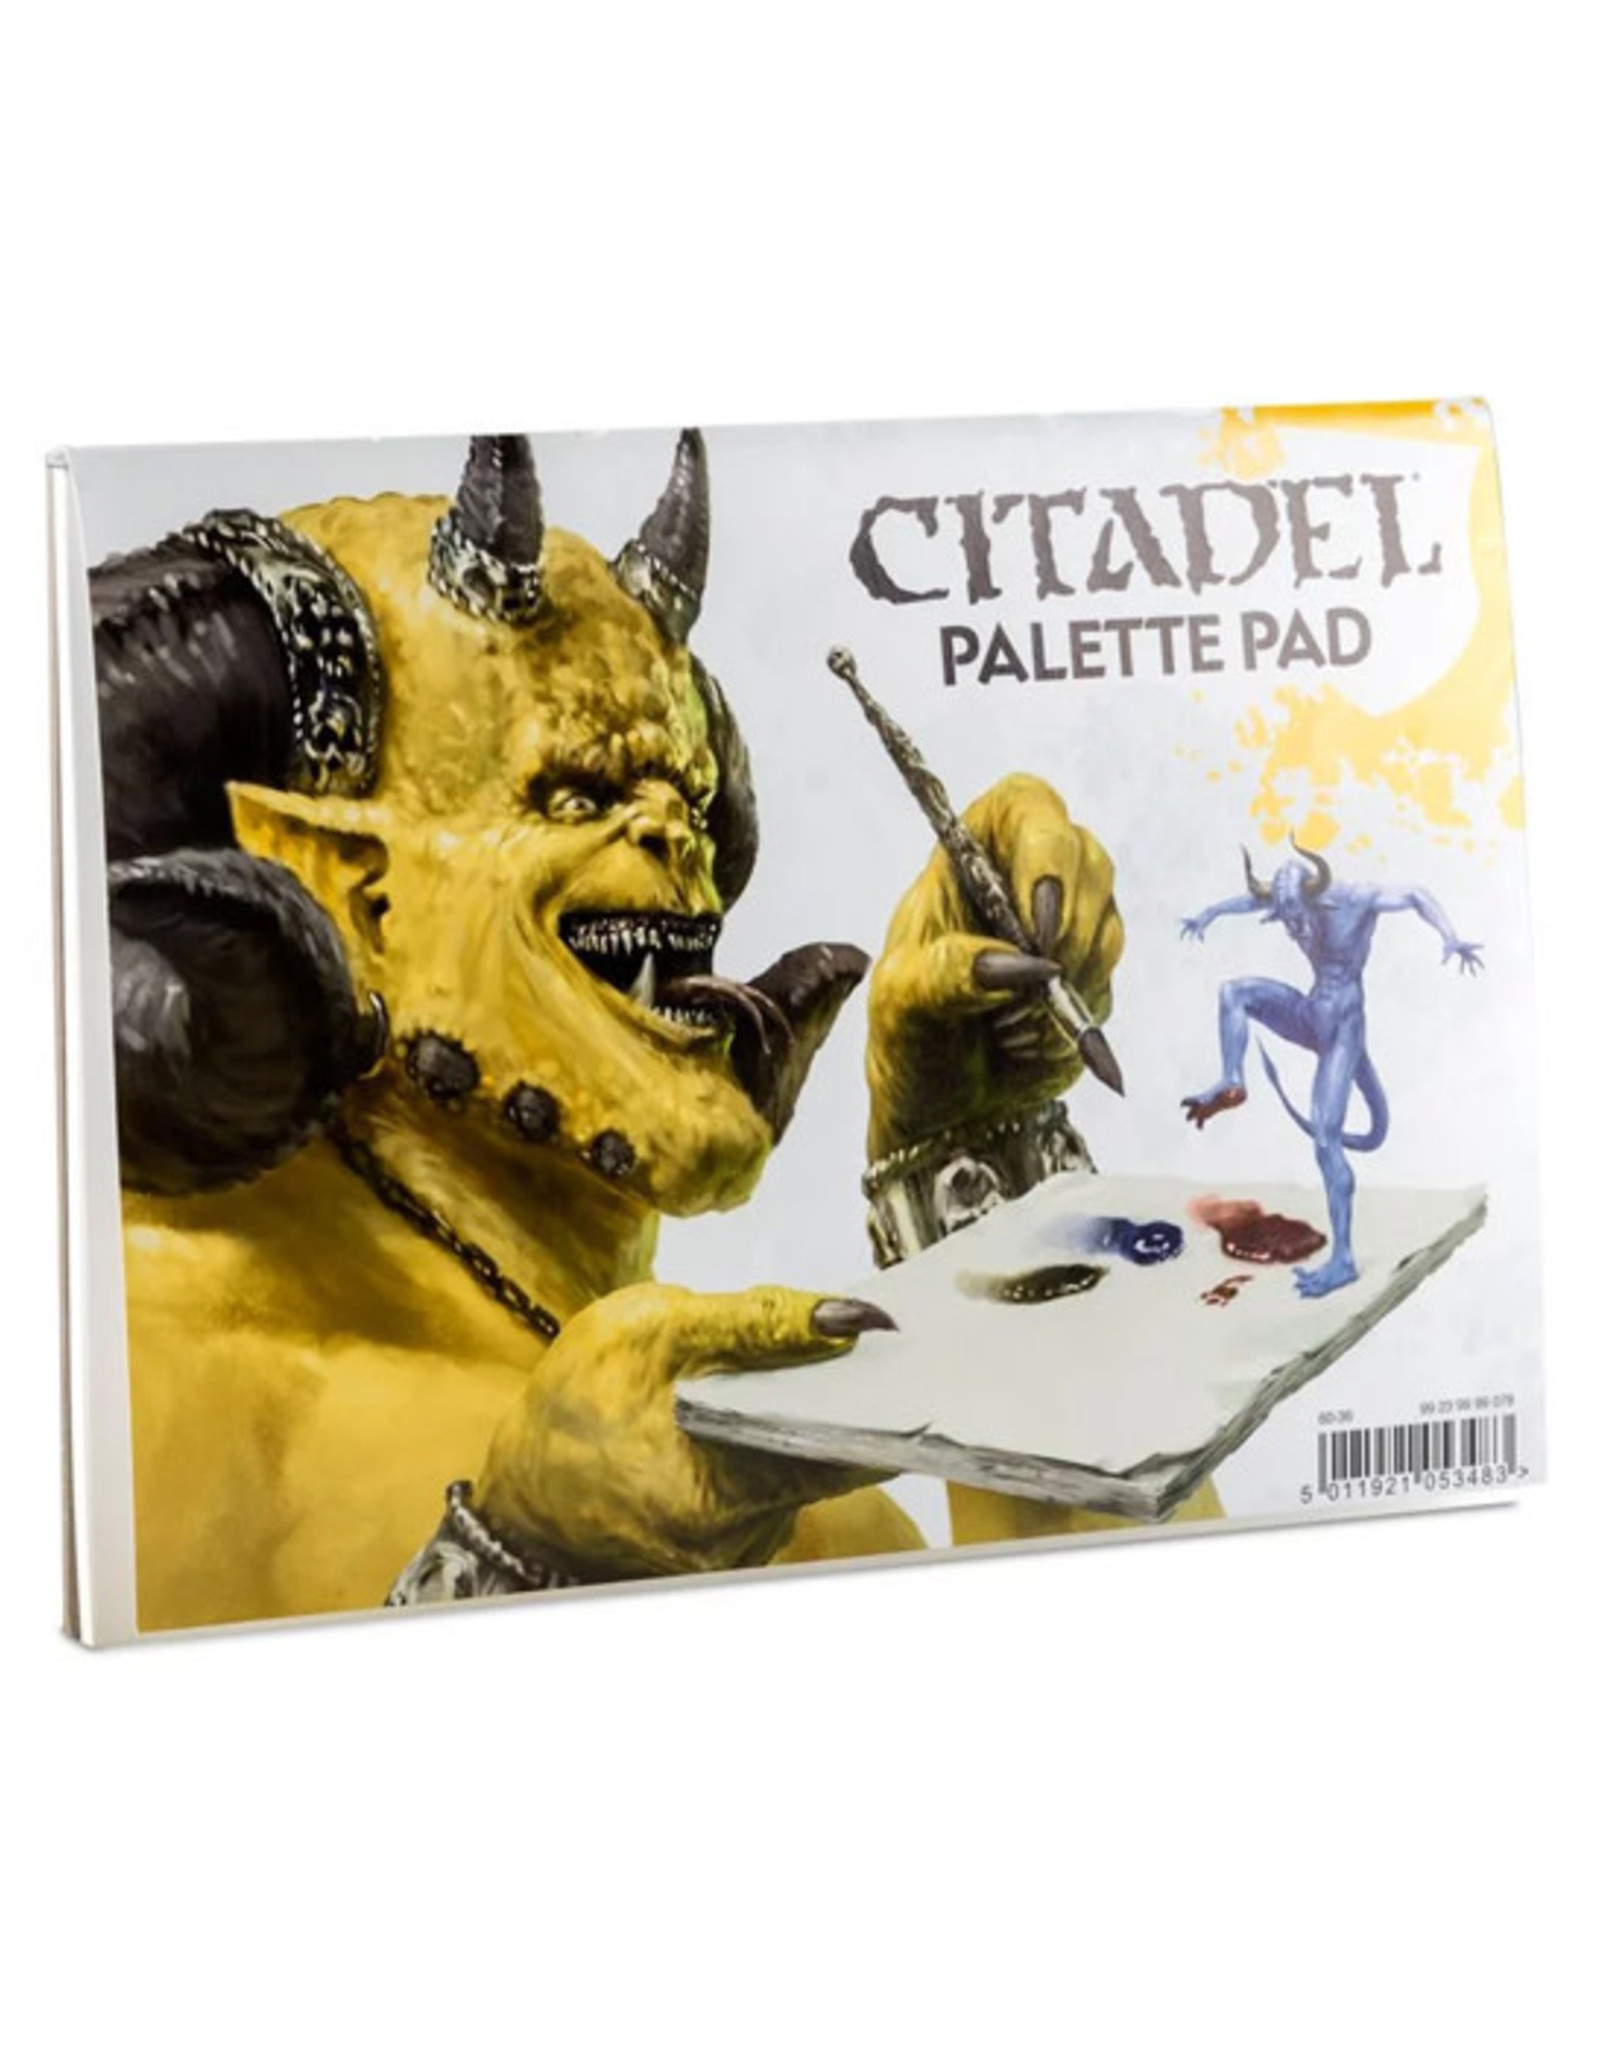 Citadel Citadel: Palette Pad